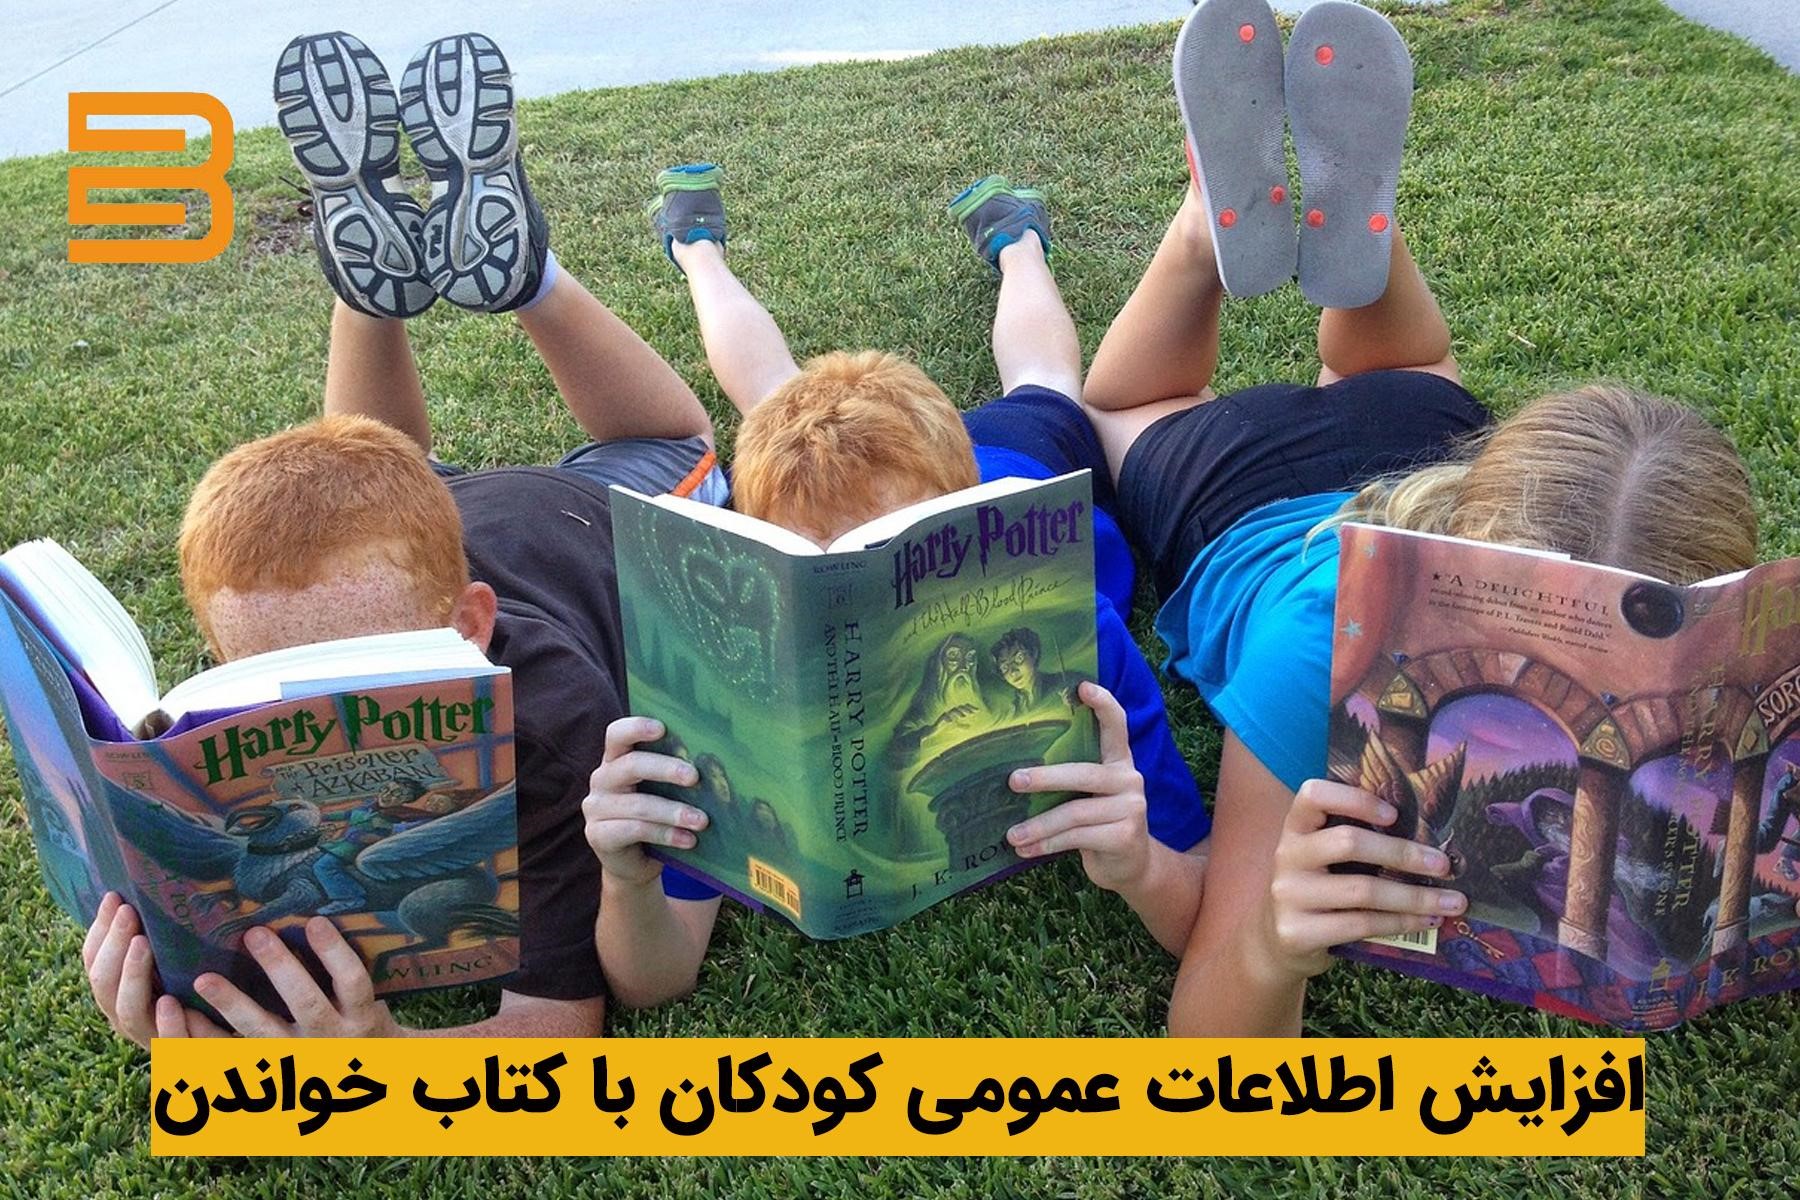 افزایش اطلاعات کودکان درباره موضوعات مختلف با کتاب خواندن